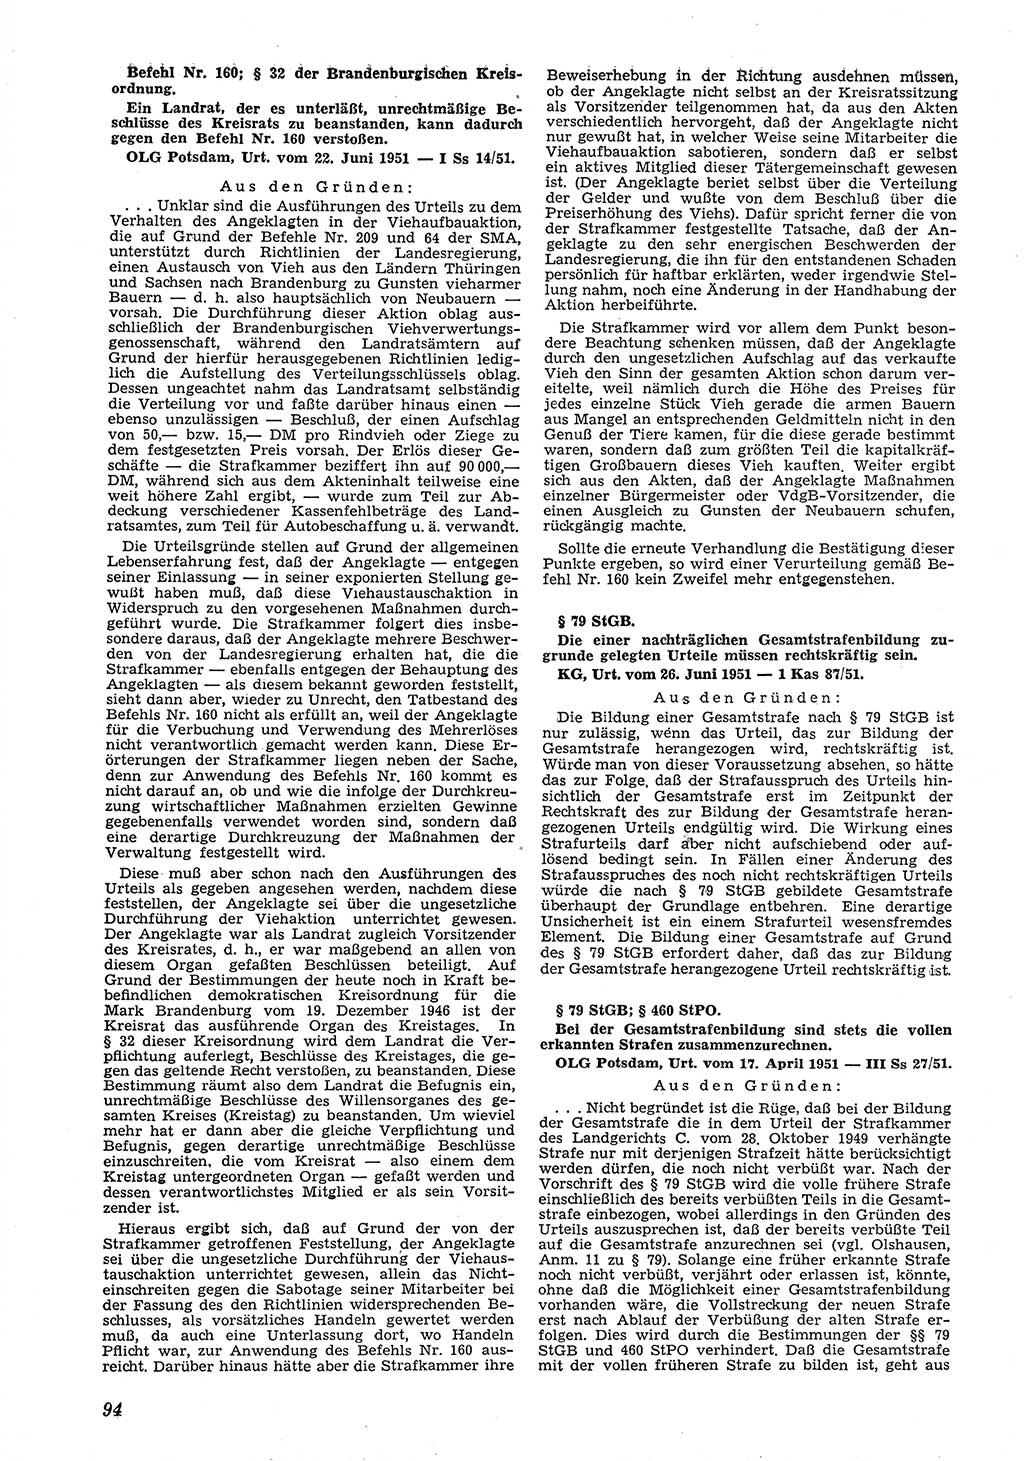 Neue Justiz (NJ), Zeitschrift für Recht und Rechtswissenschaft [Deutsche Demokratische Republik (DDR)], 6. Jahrgang 1952, Seite 94 (NJ DDR 1952, S. 94)